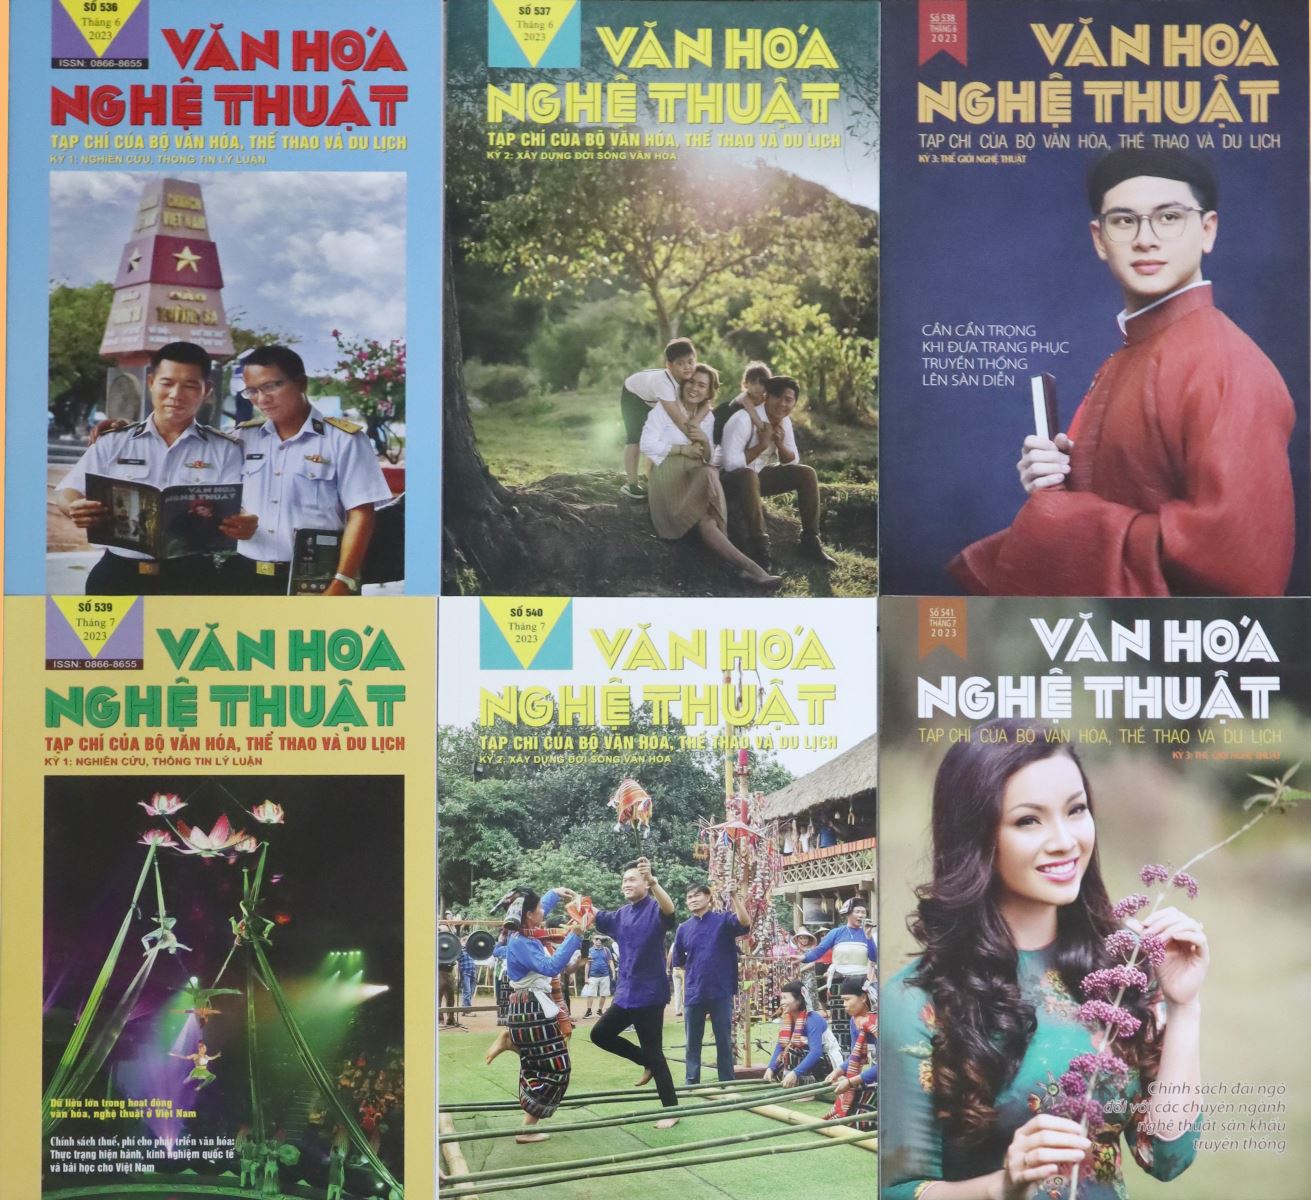 Tạp chí Văn hóa Nghệ thuật và việc phản ánh sâu sắc các vấn đề văn hóa nghệ thuật của Việt Nam và thế giới